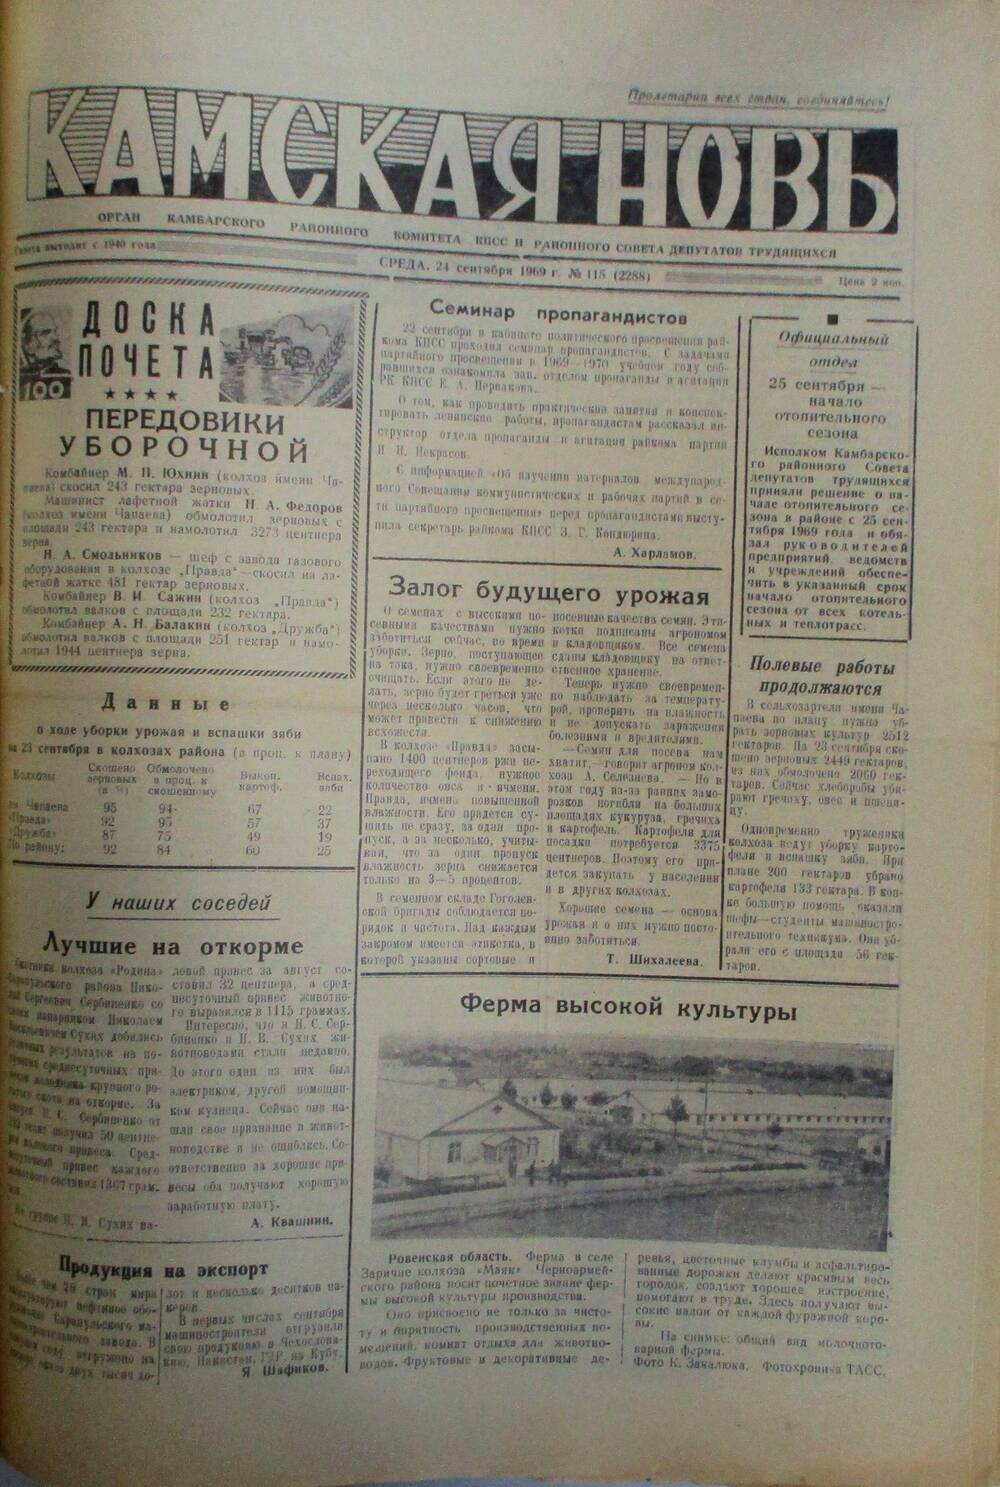 Газеты Камская новь за 1969 год, орган Камбарского райсовета и  РККПСС, с №1 по №66, с №68 по №156. №115.